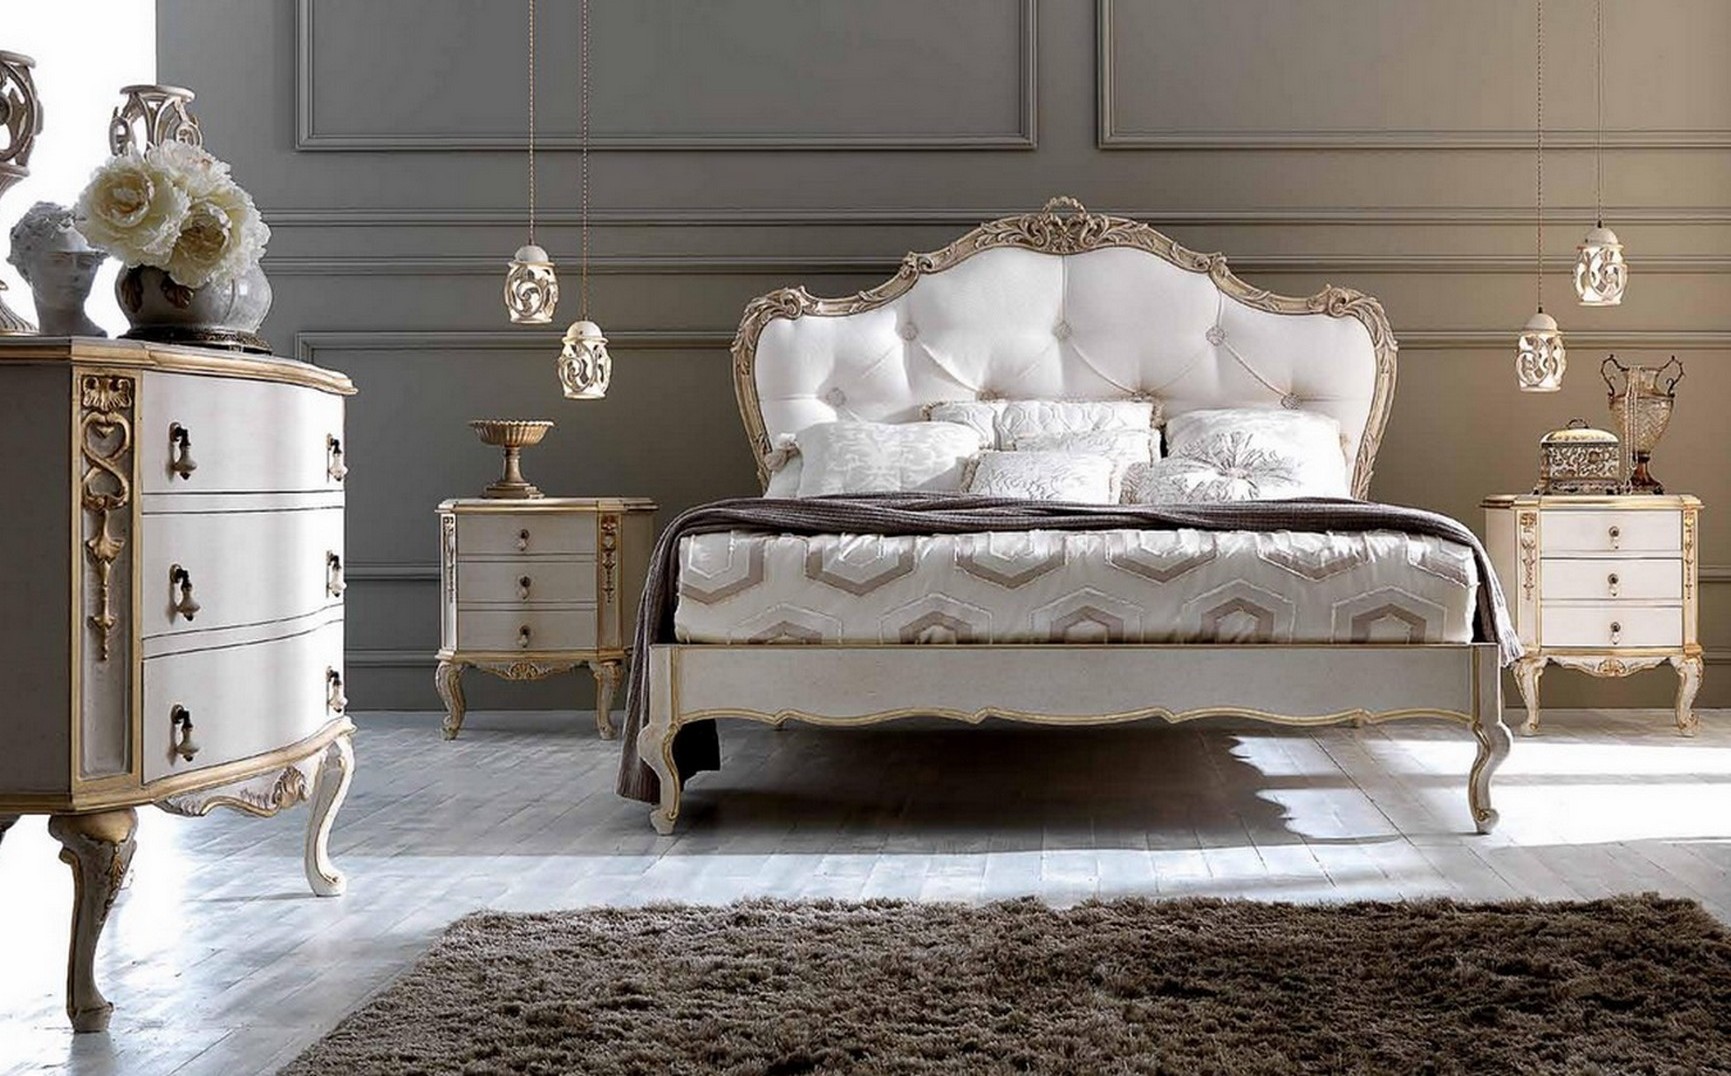 Baroque luxury bedroom